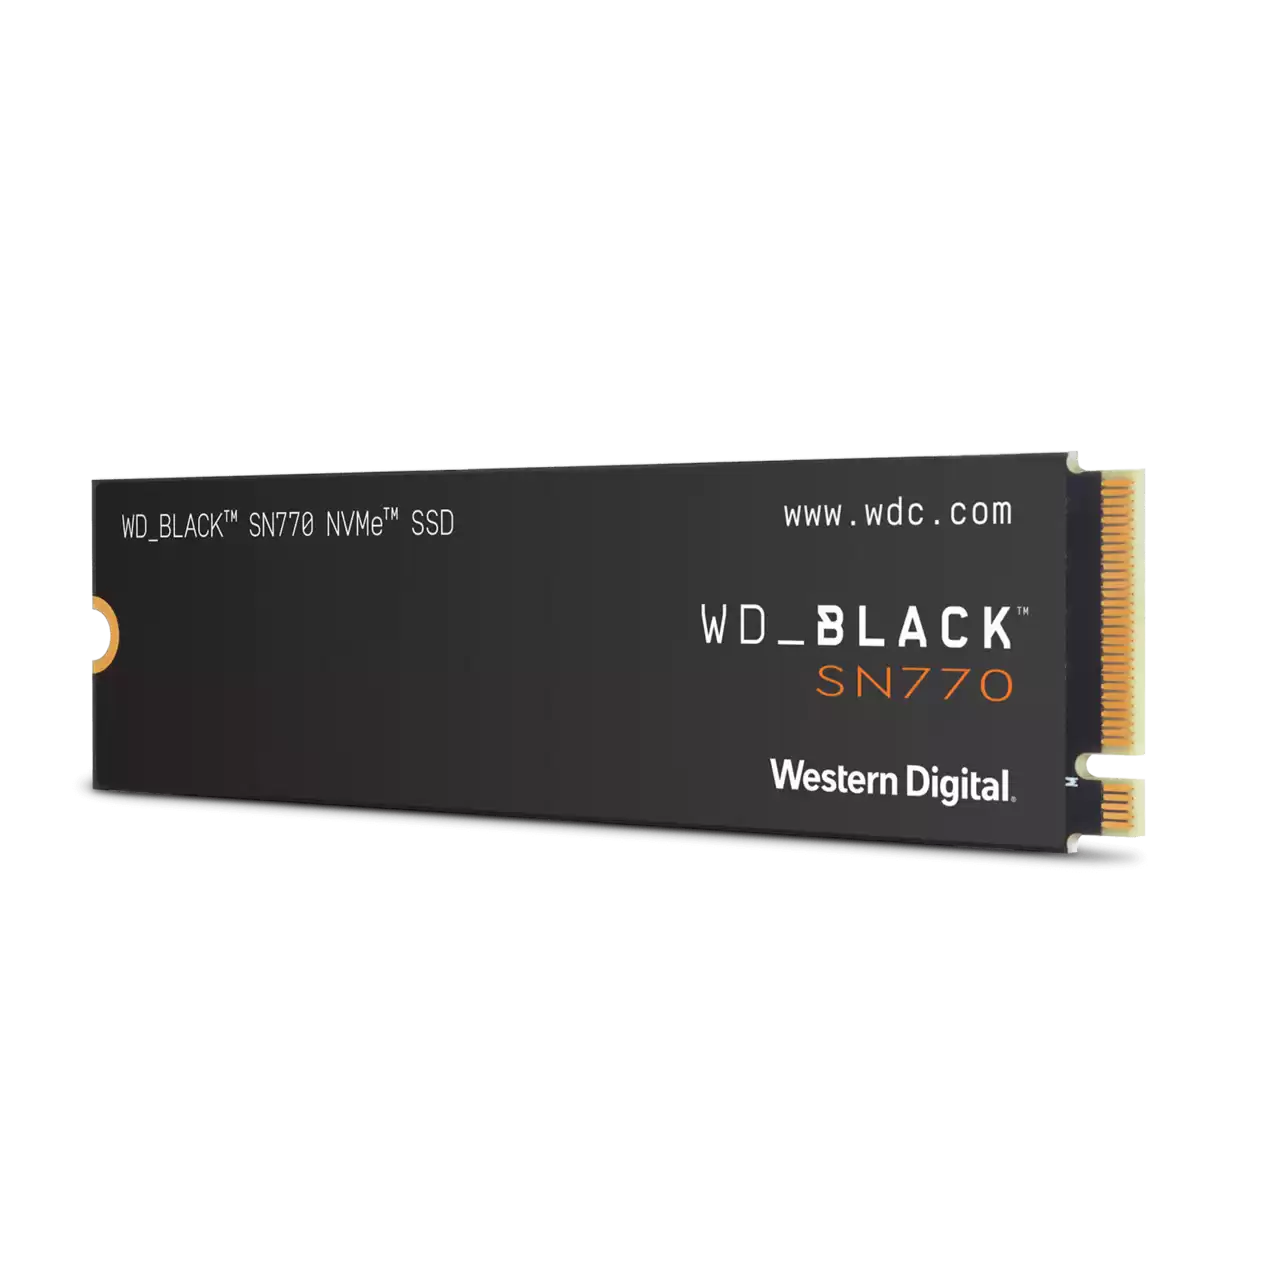 Western Digital WD BLACK SN770 NVMe SSD 500GB (5000MB/s)